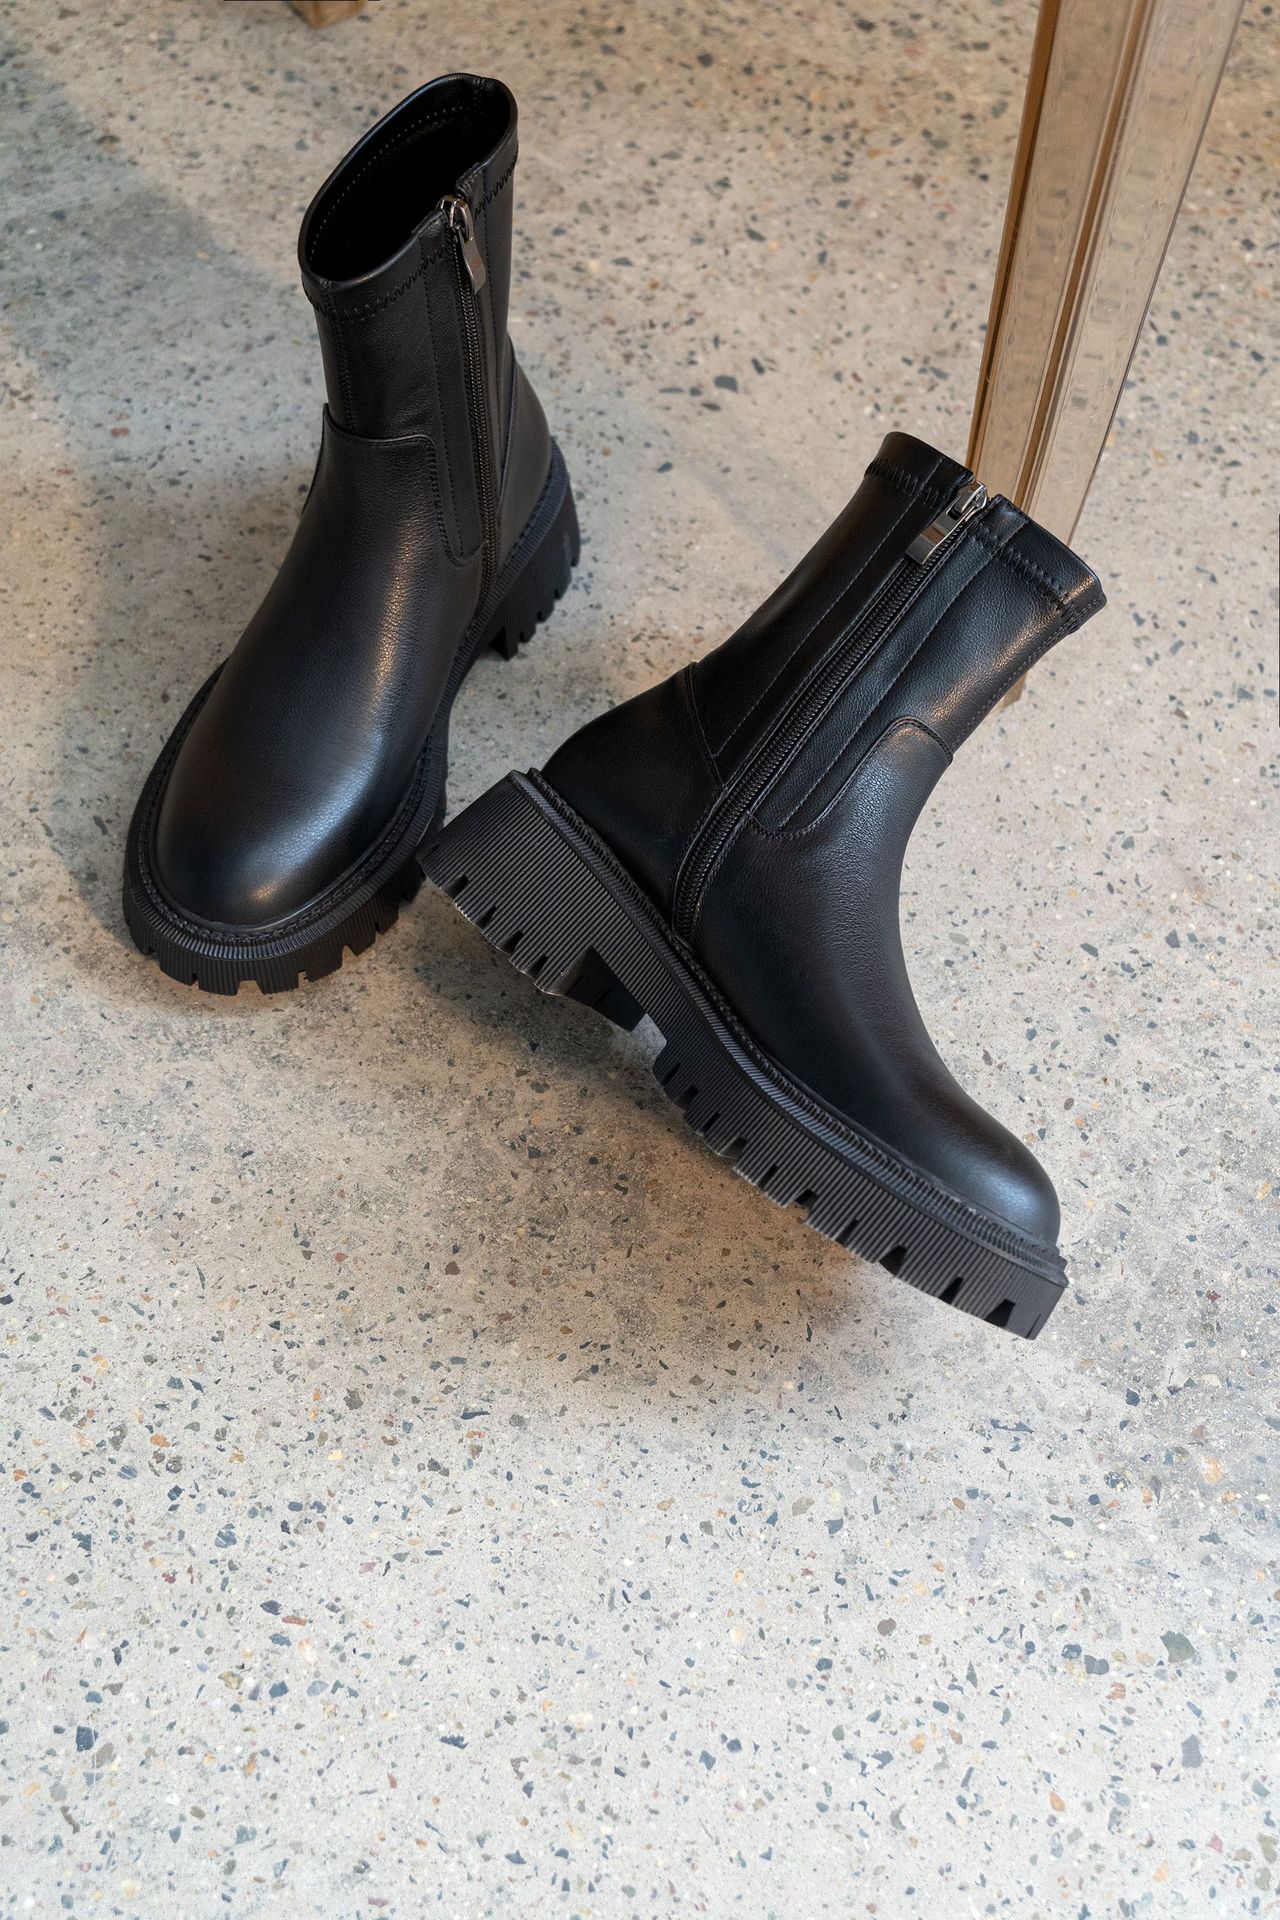 Chiko Emerita Round Toe Block Heels Boots